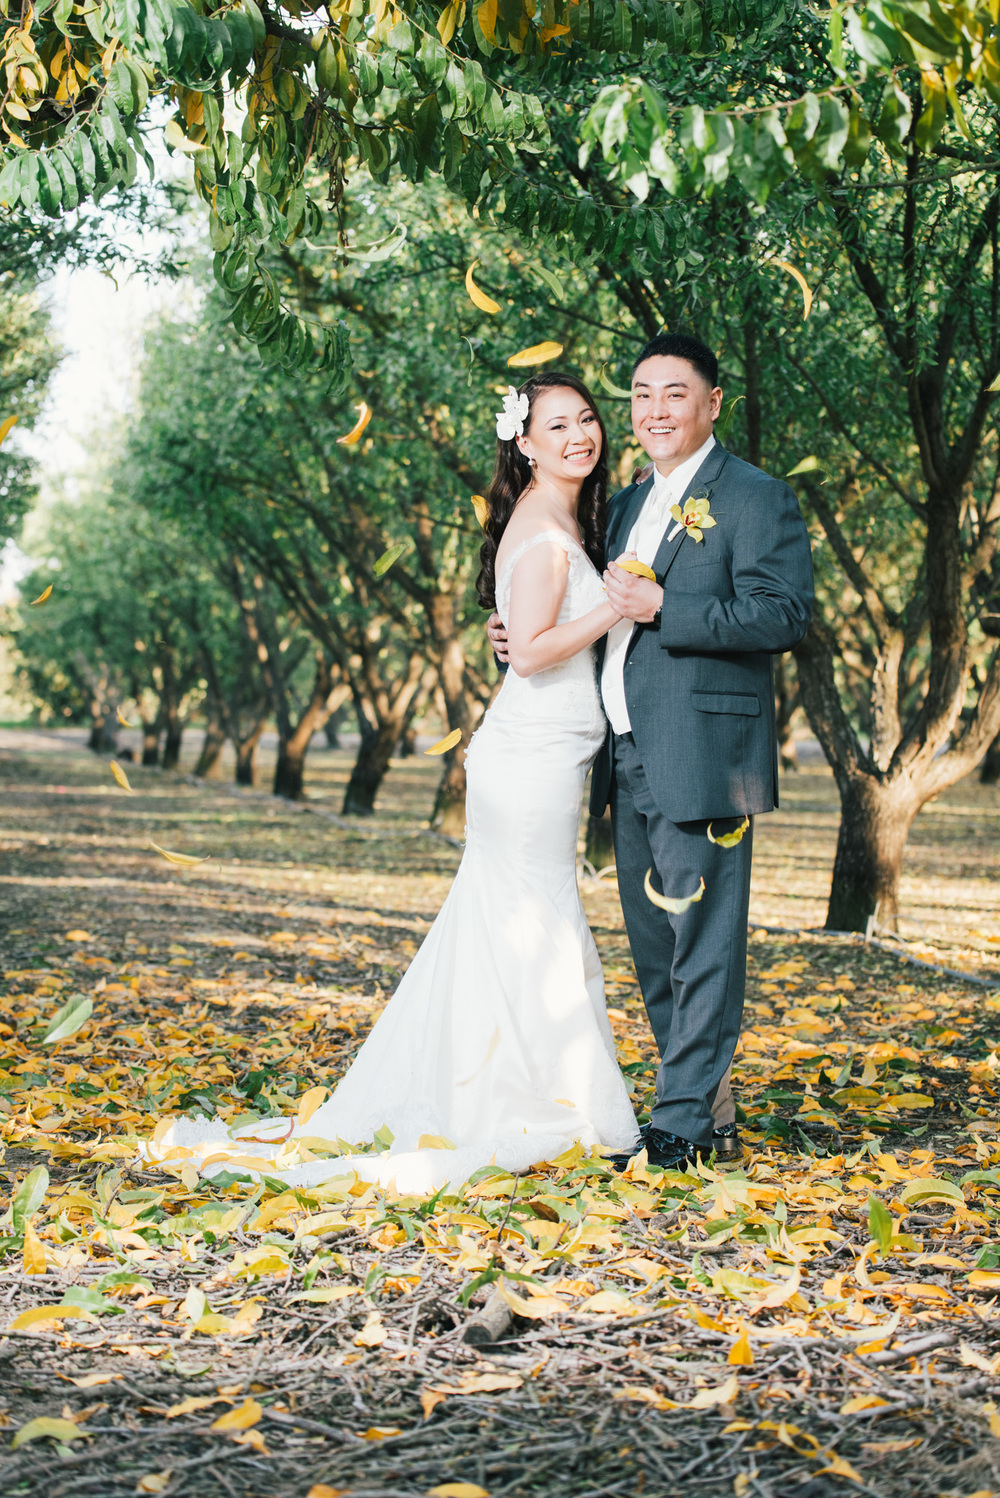 Lan And Ryan At Tuscan Gardens In Kingsburg Wedding Photography